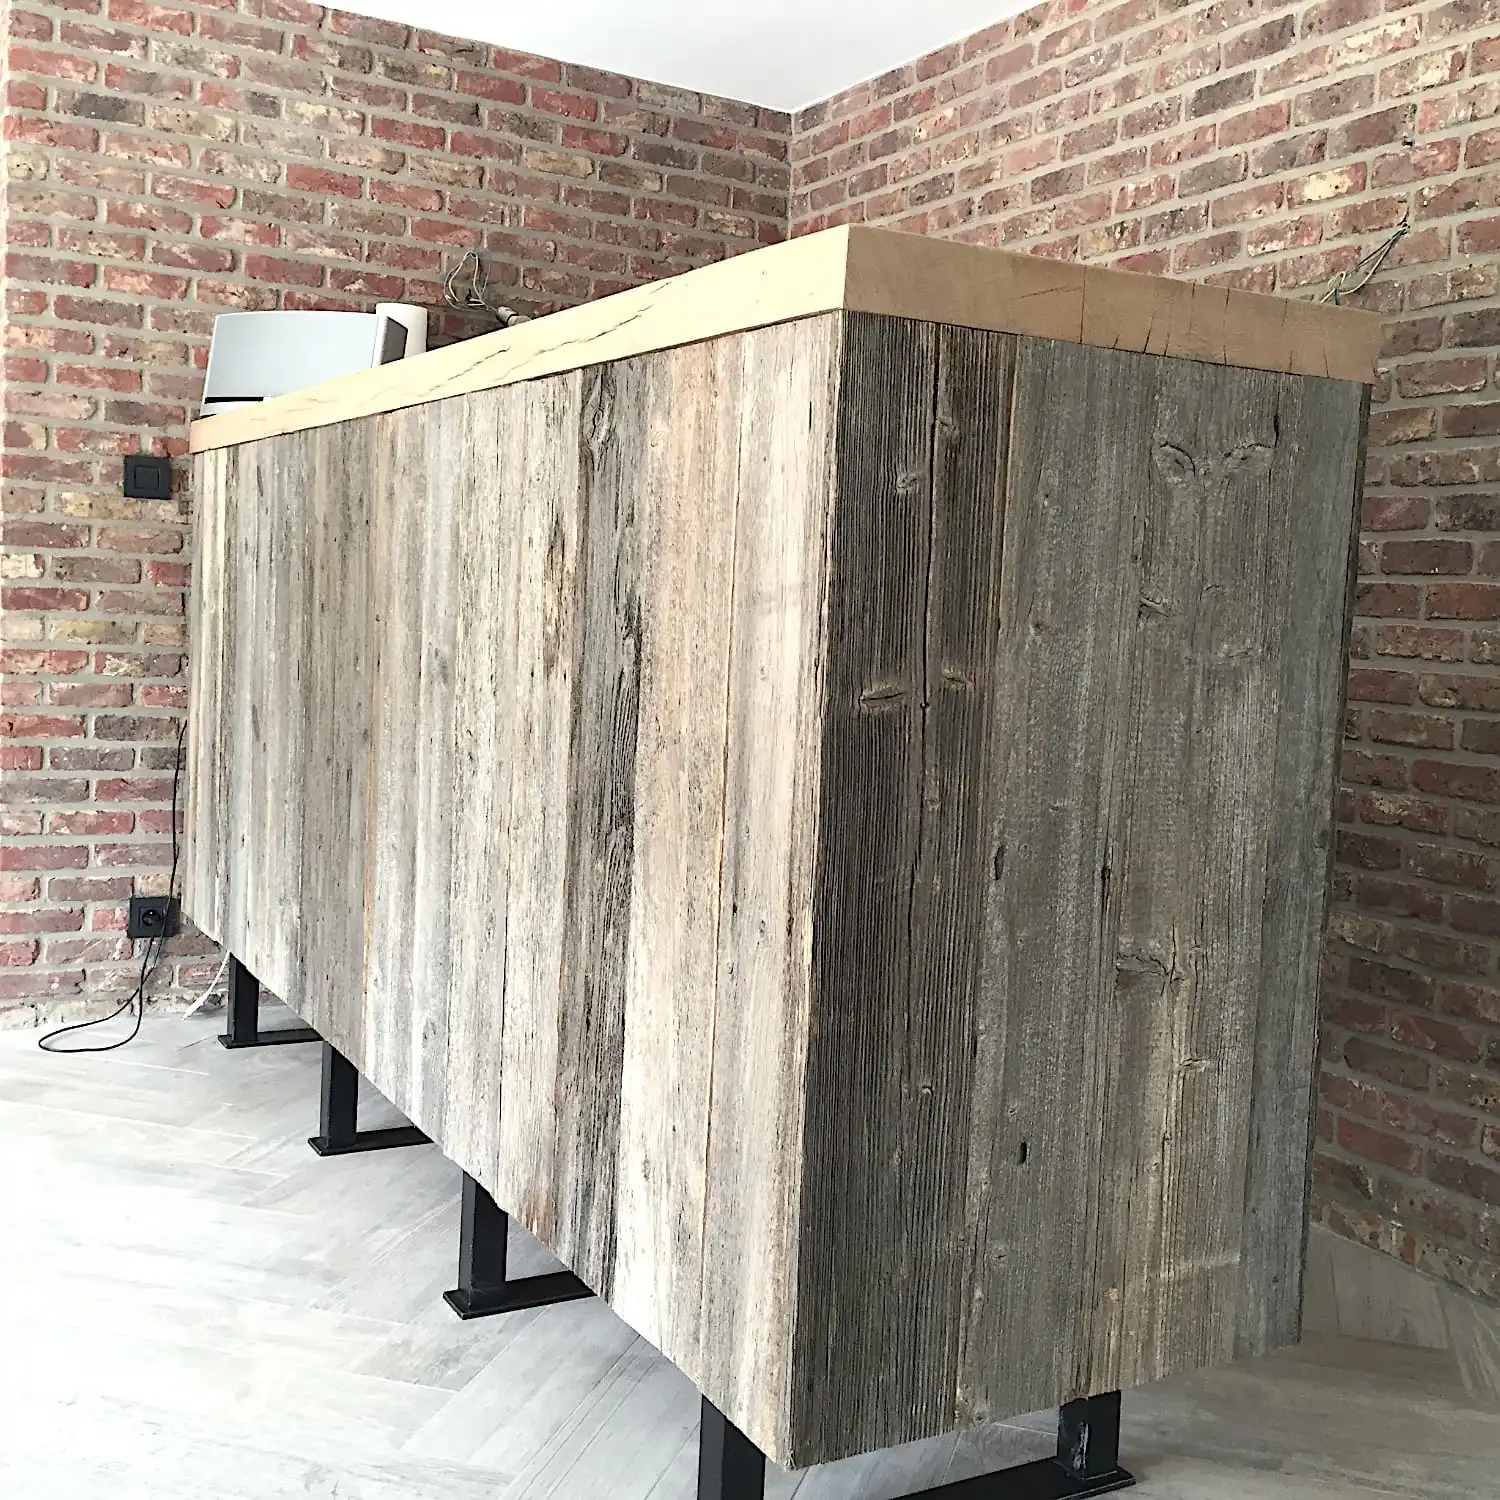  Un grand comptoir de bar en bois dans une pièce avec des murs en briques et une prise électrique visible, agrémenté de panneaux vieux bois. 